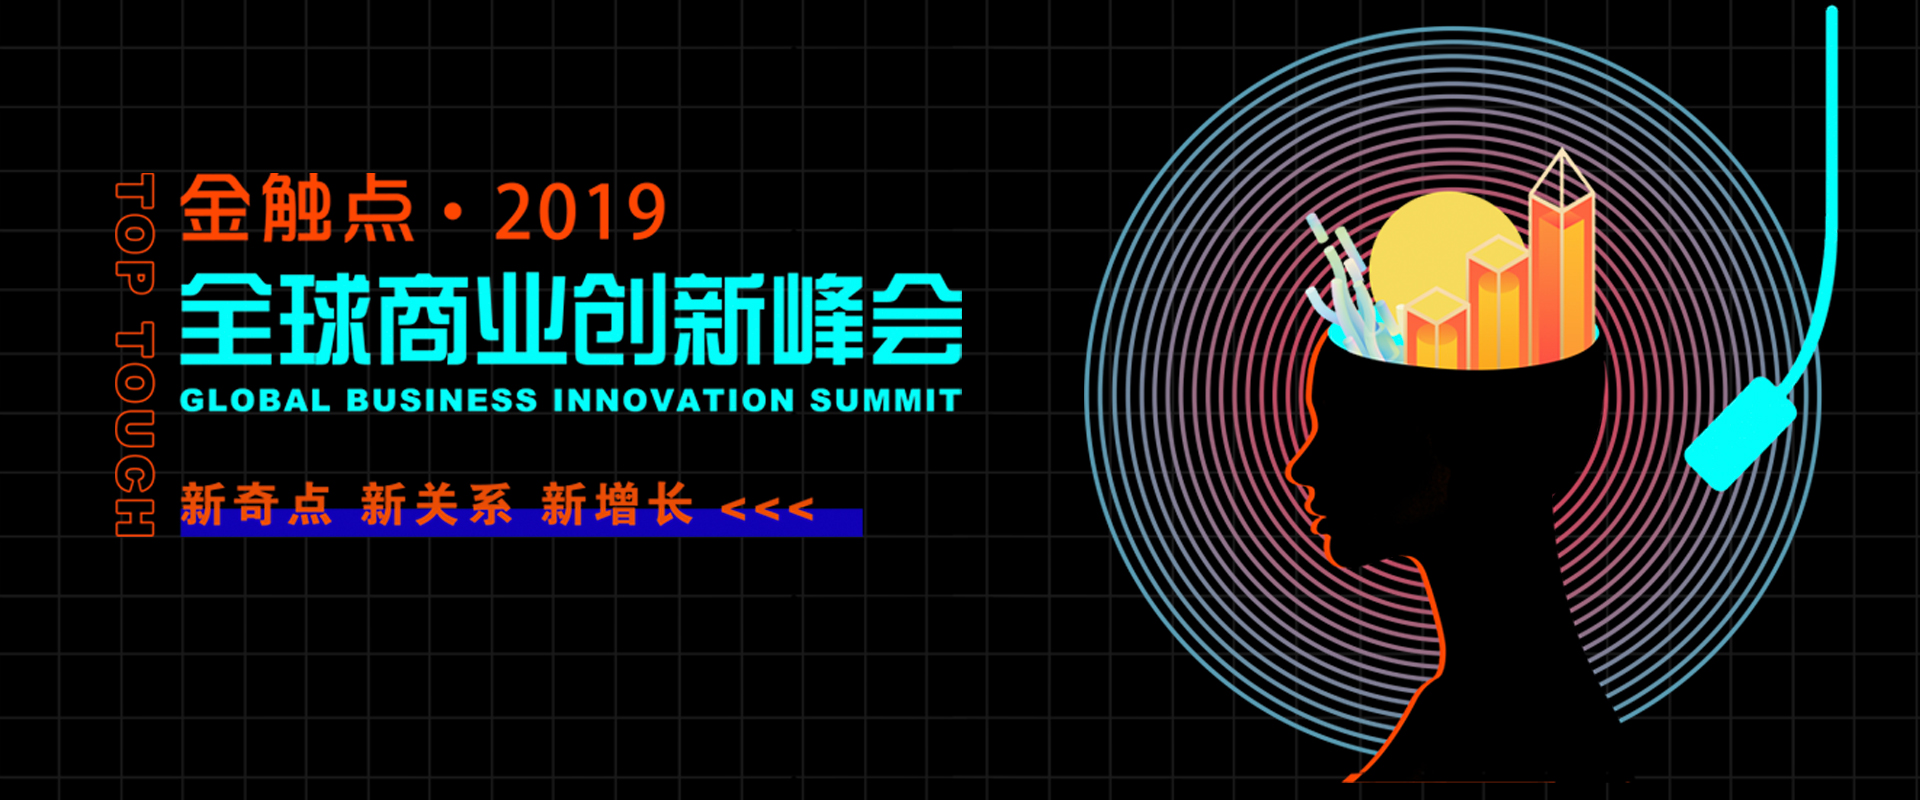 金触点·2019全球商业创新峰会